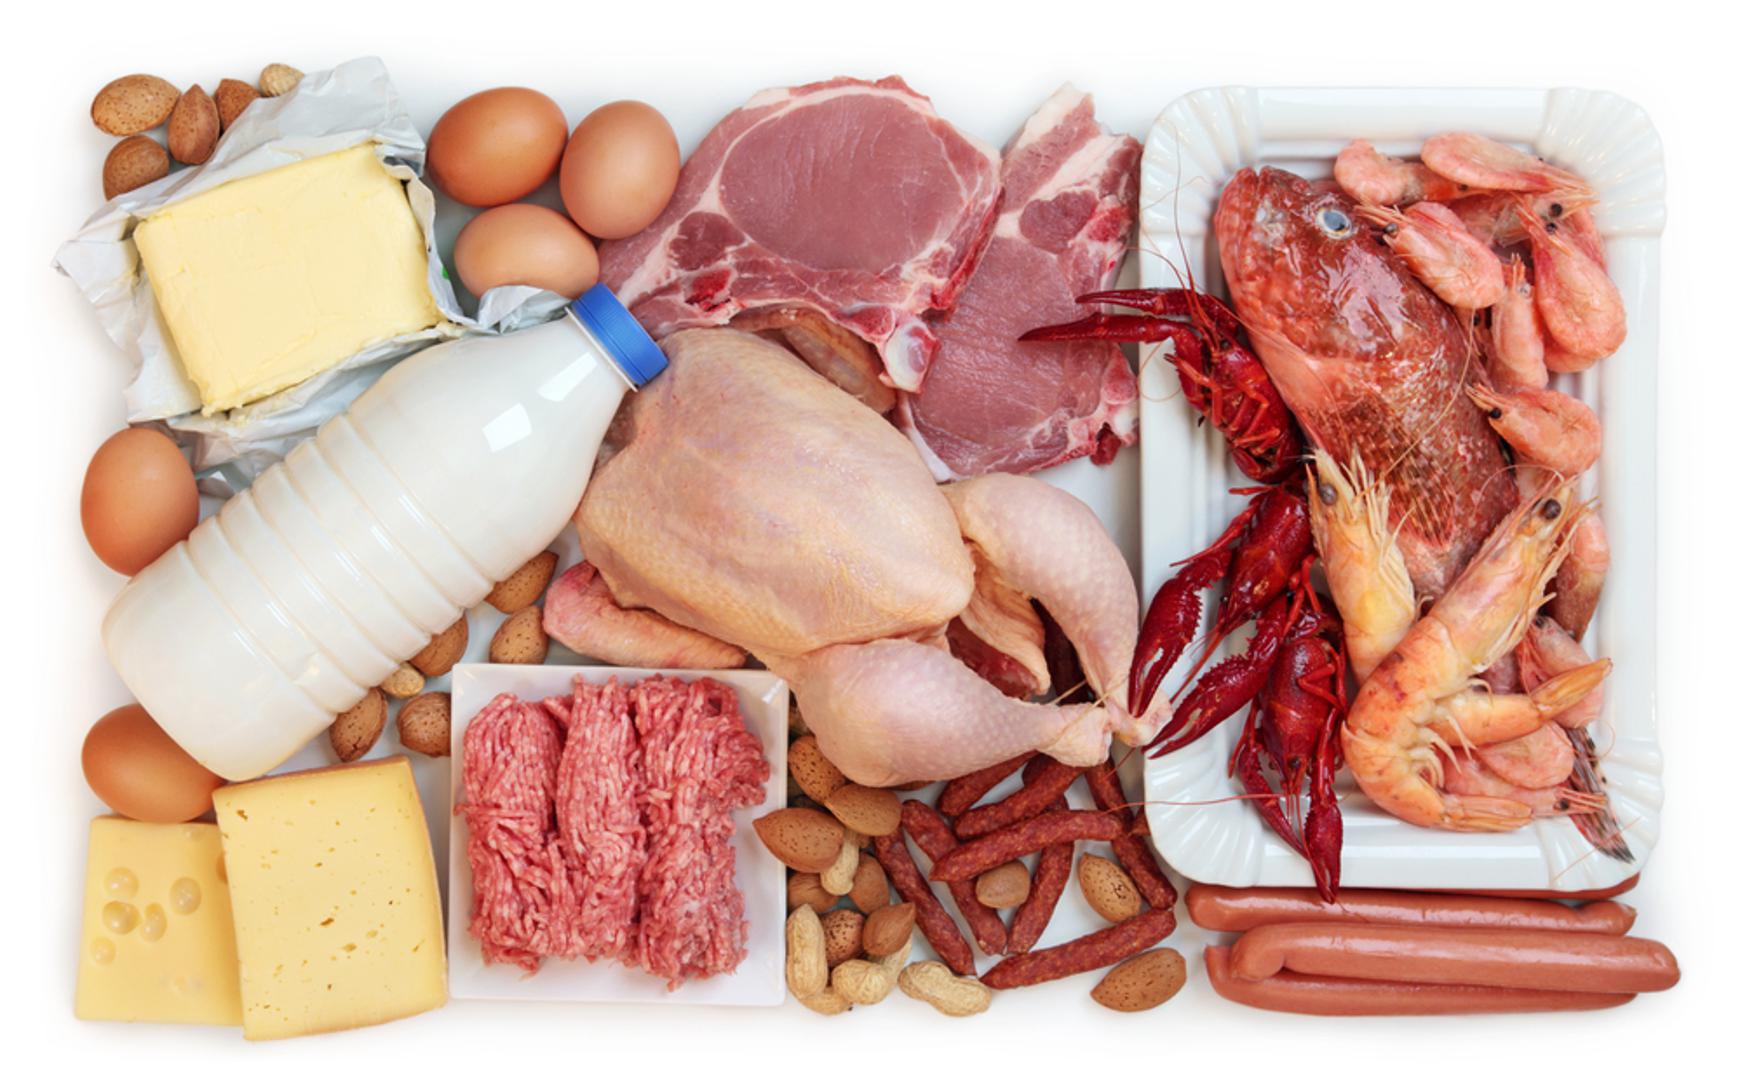 Jedite proteine u svakom obroku – Proteini pomažu u suzbijanju apetita jer smanjuju hormon odgovoran za glad zbog čega se osjećate sitima puno duže. Uzimajte barem 20 grama proteina u svakom obroku, ali birajte one s malo masnoća poput ribe, peradi i mliječnih proizvoda s niskim udjelom masti.